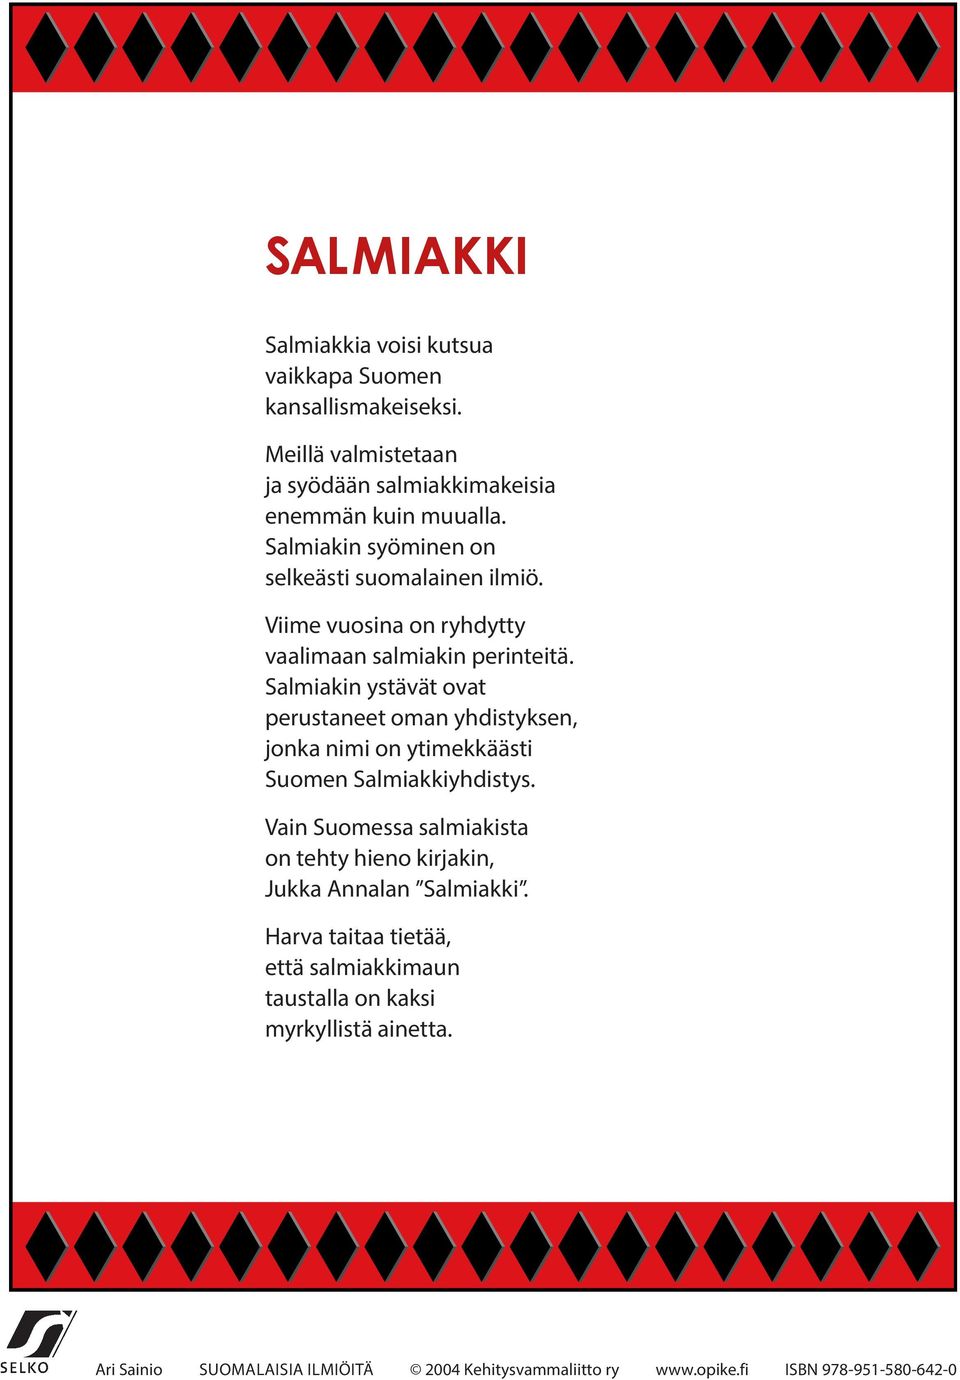 Salmiakin ystävät ovat perustaneet oman yhdistyksen, jonka nimi on ytimekkäästi Suomen Salmiakkiyhdistys.